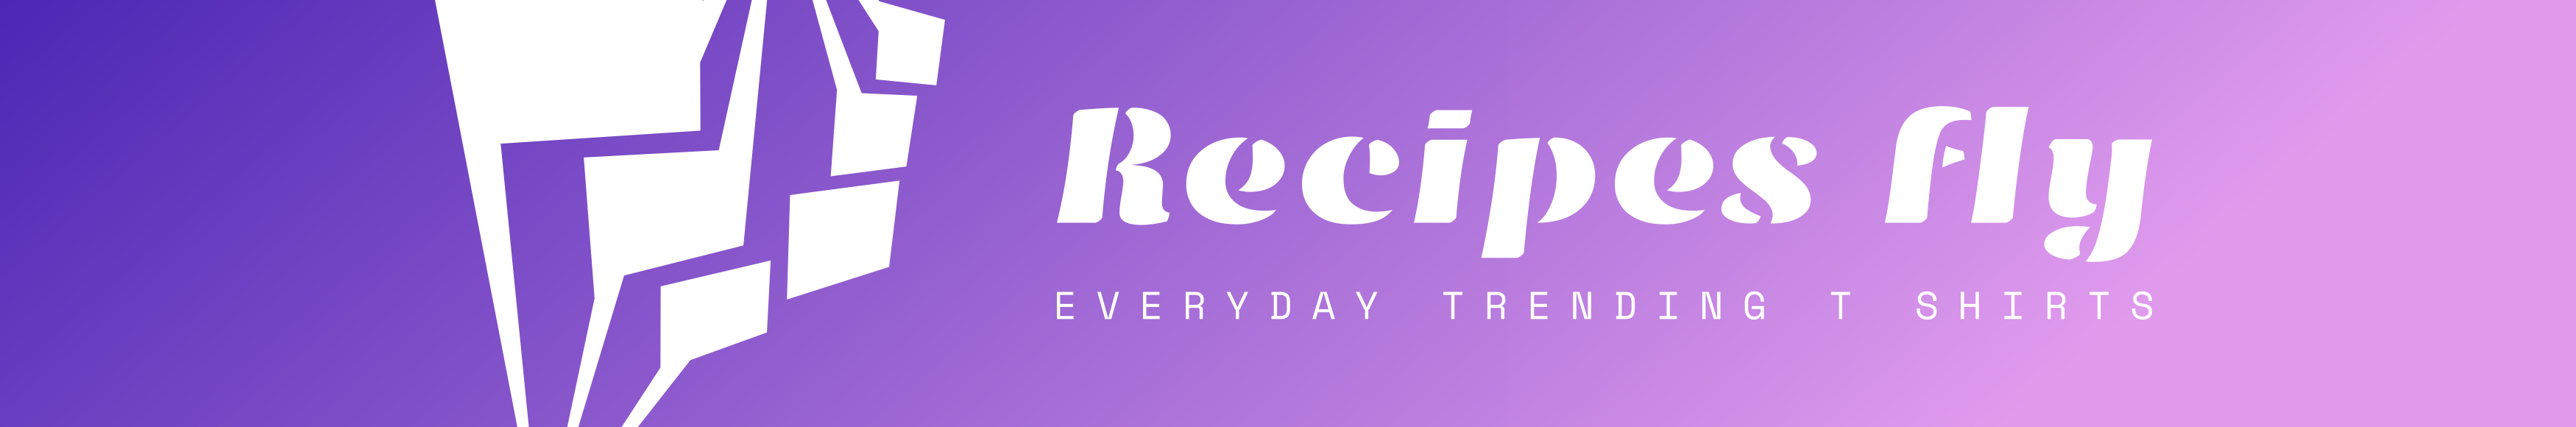 Profil-Banner von Recipes fly